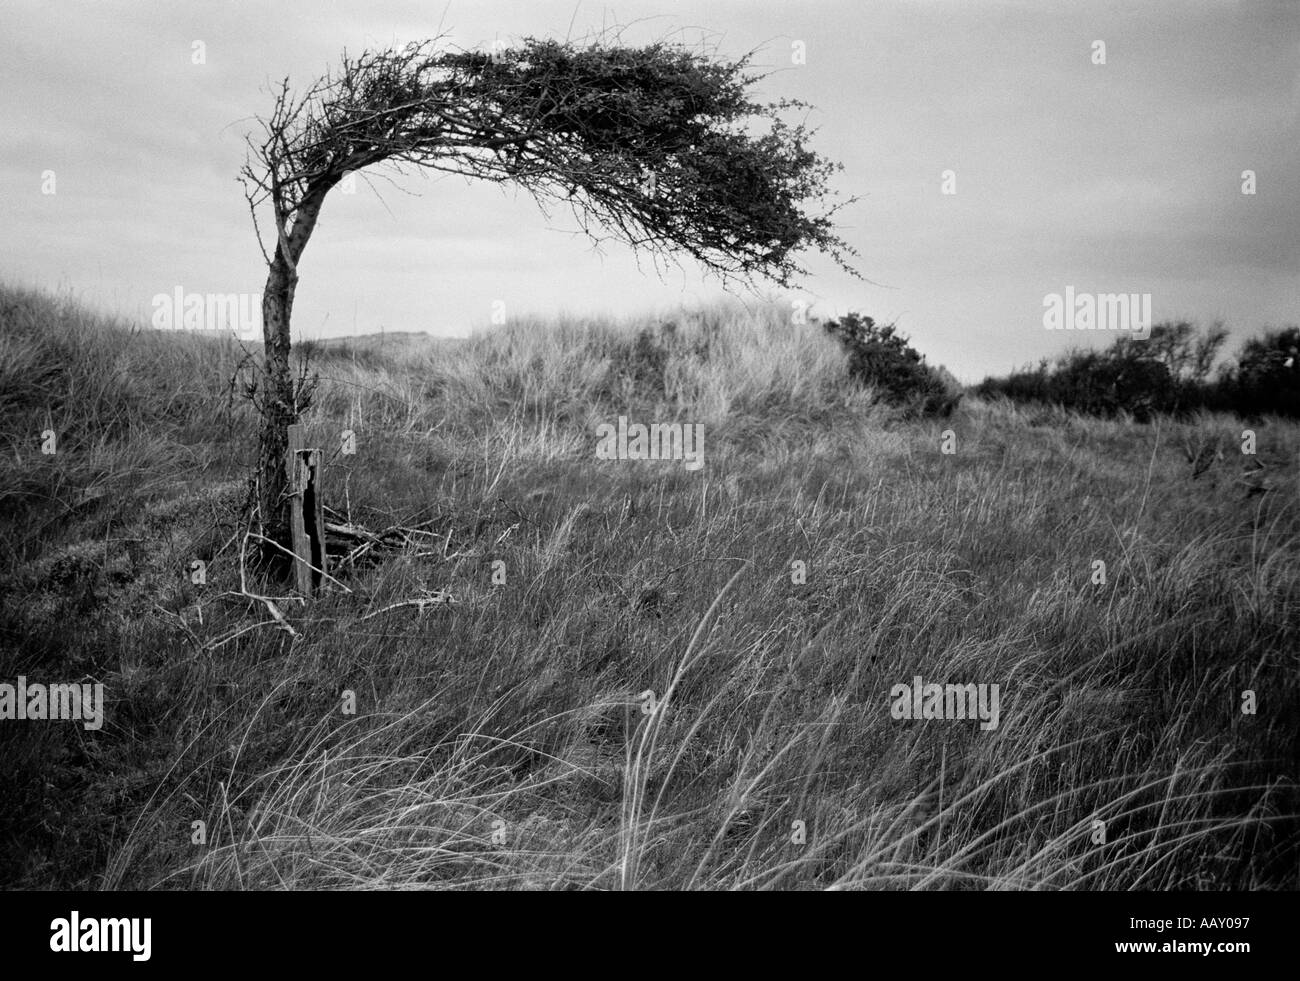 WINDY albero area costiera Foto Stock